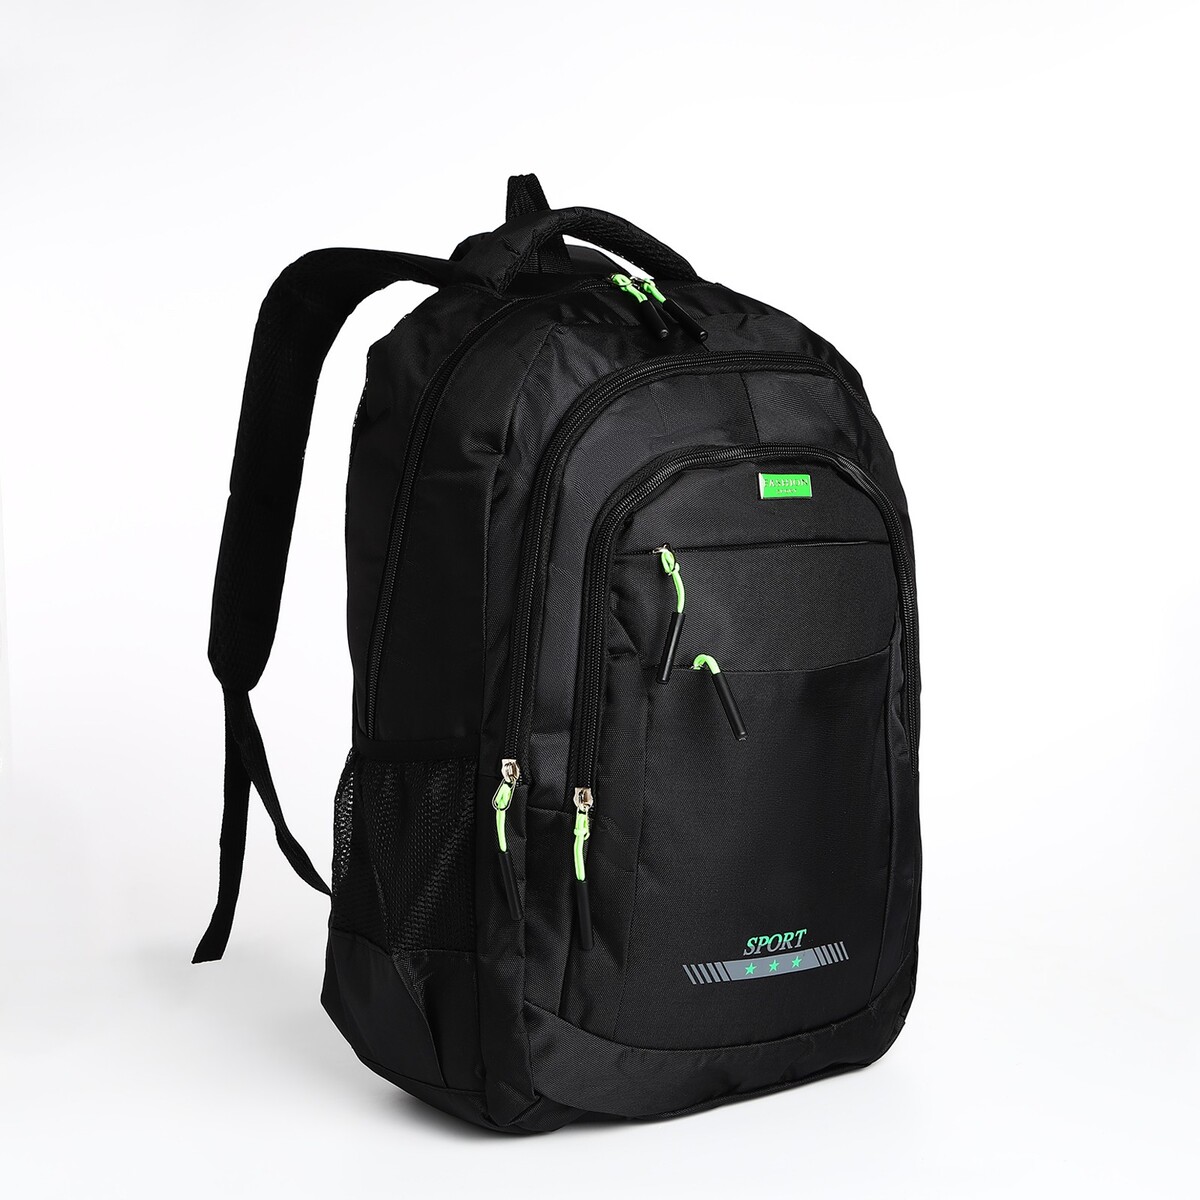 Рюкзак мужской на молнии, 4 наружных кармана, цвет черный/зеленый рюкзак сумка на молнии 4 наружных кармана отделение для обуви зеленый